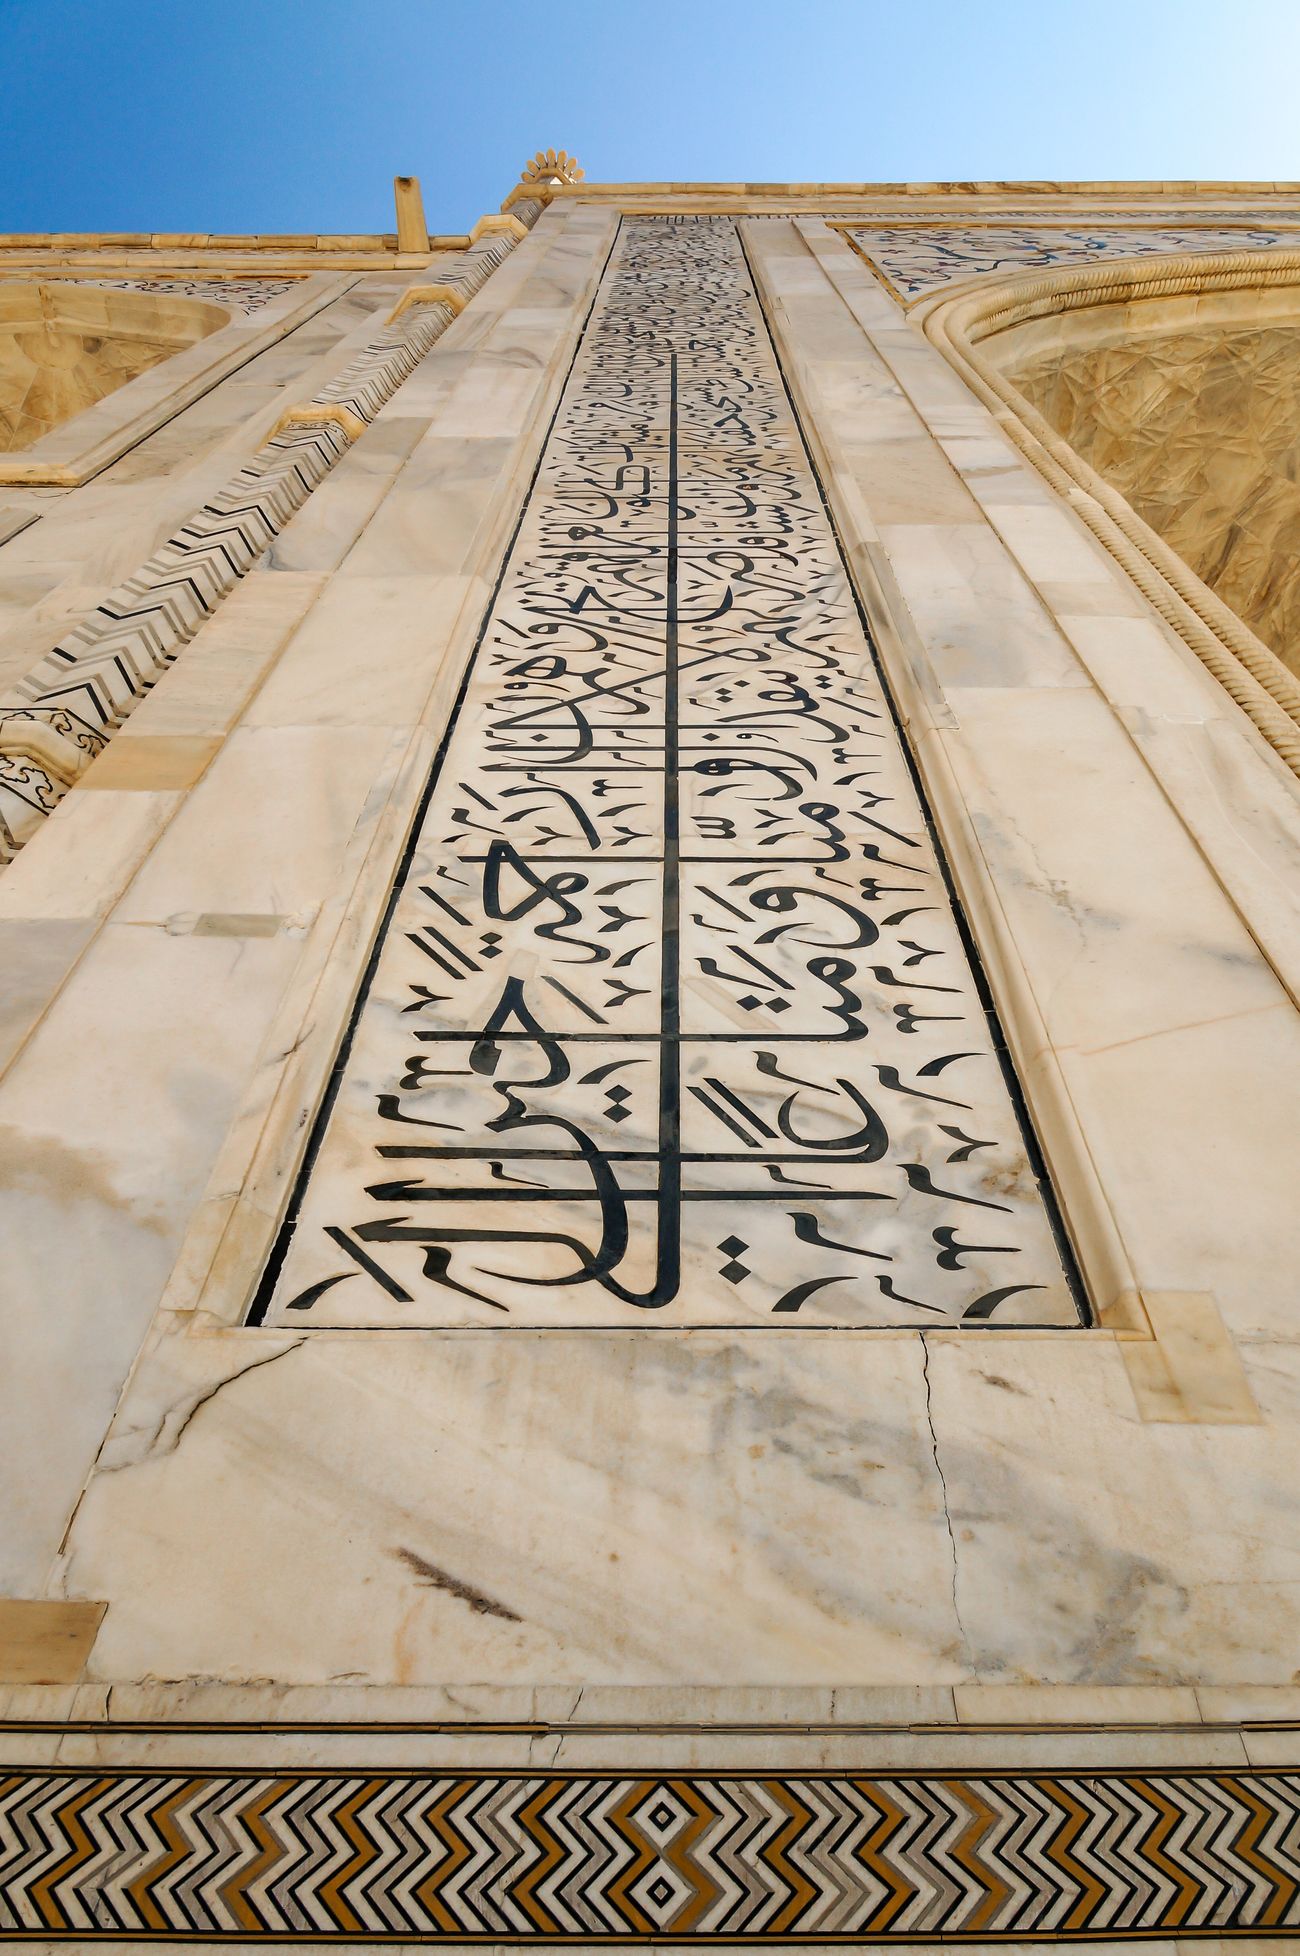 quran verses in persian calligraphy in taj mahal